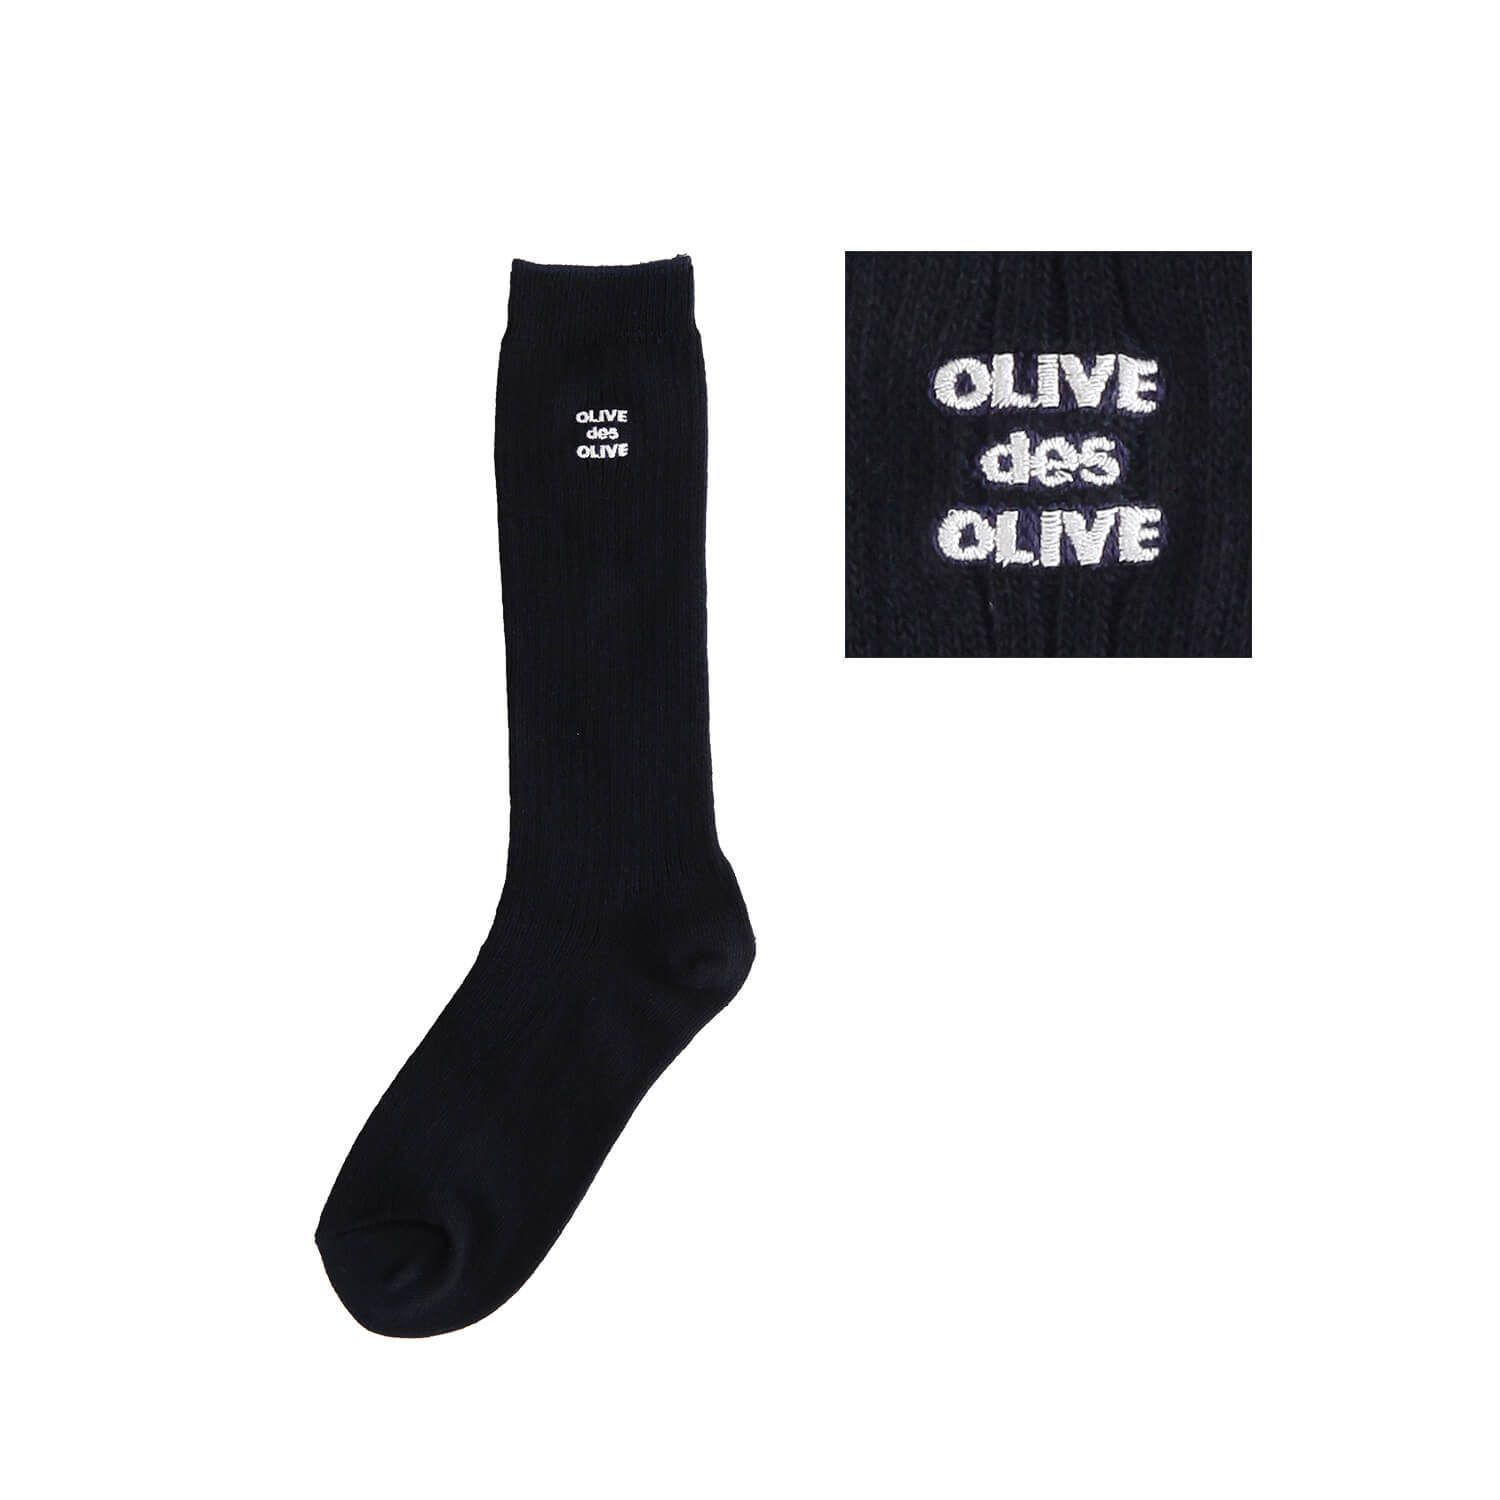 OLIVE des OLIVEのポップなロゴ刺繍入りのレギュラーソックス。刺繍カラー-01白